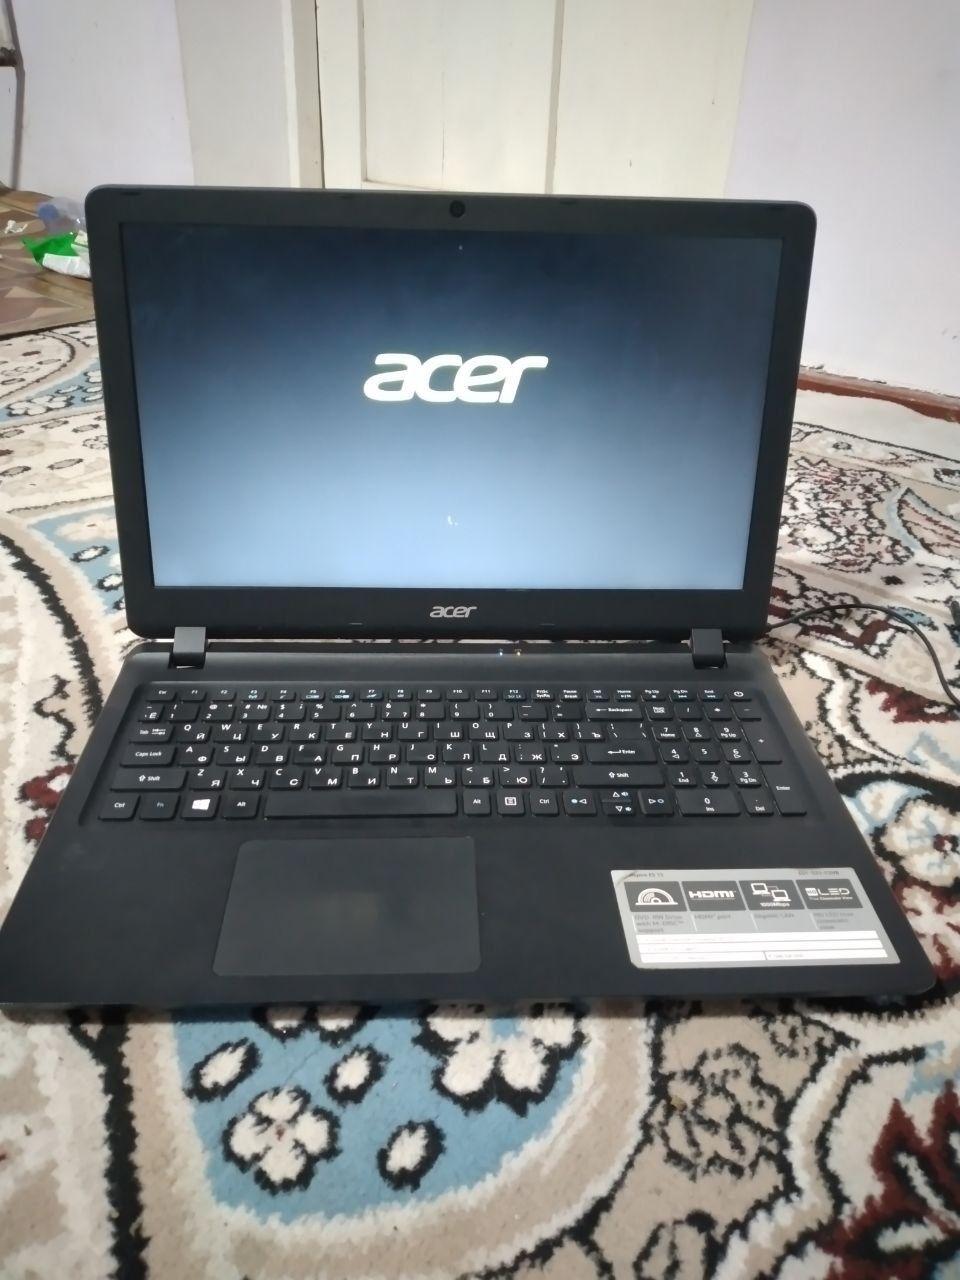 Noutbook markasi: Acer